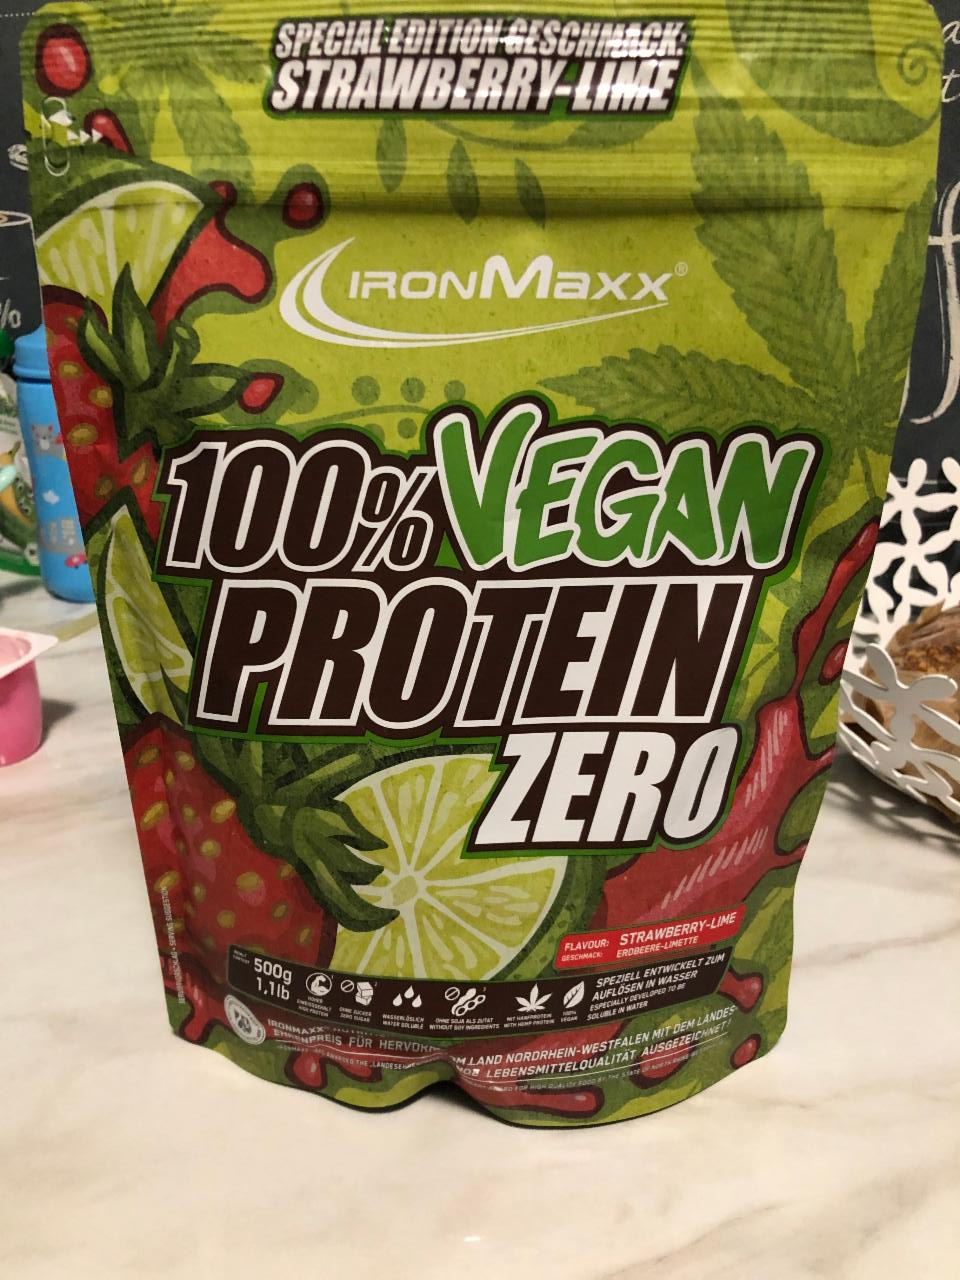 Fotografie - 100% Vegan Protein Zero strawberry-lime IronMaxx